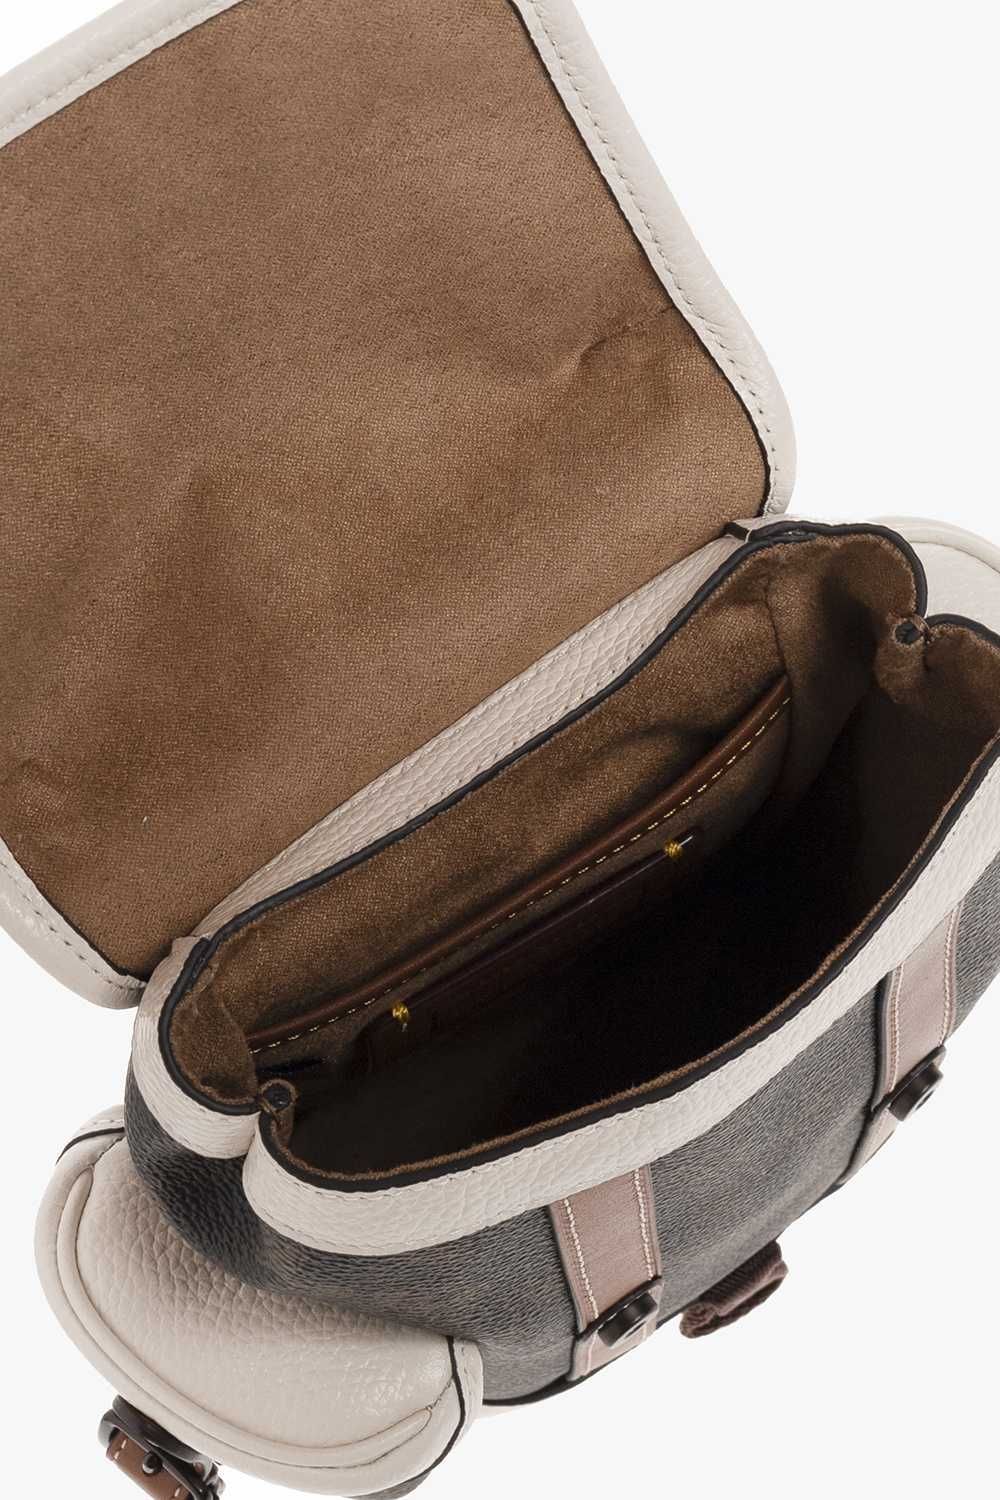 •	Coach torba/plecak  Hitch Mini Horse  Carriage Print Backpack